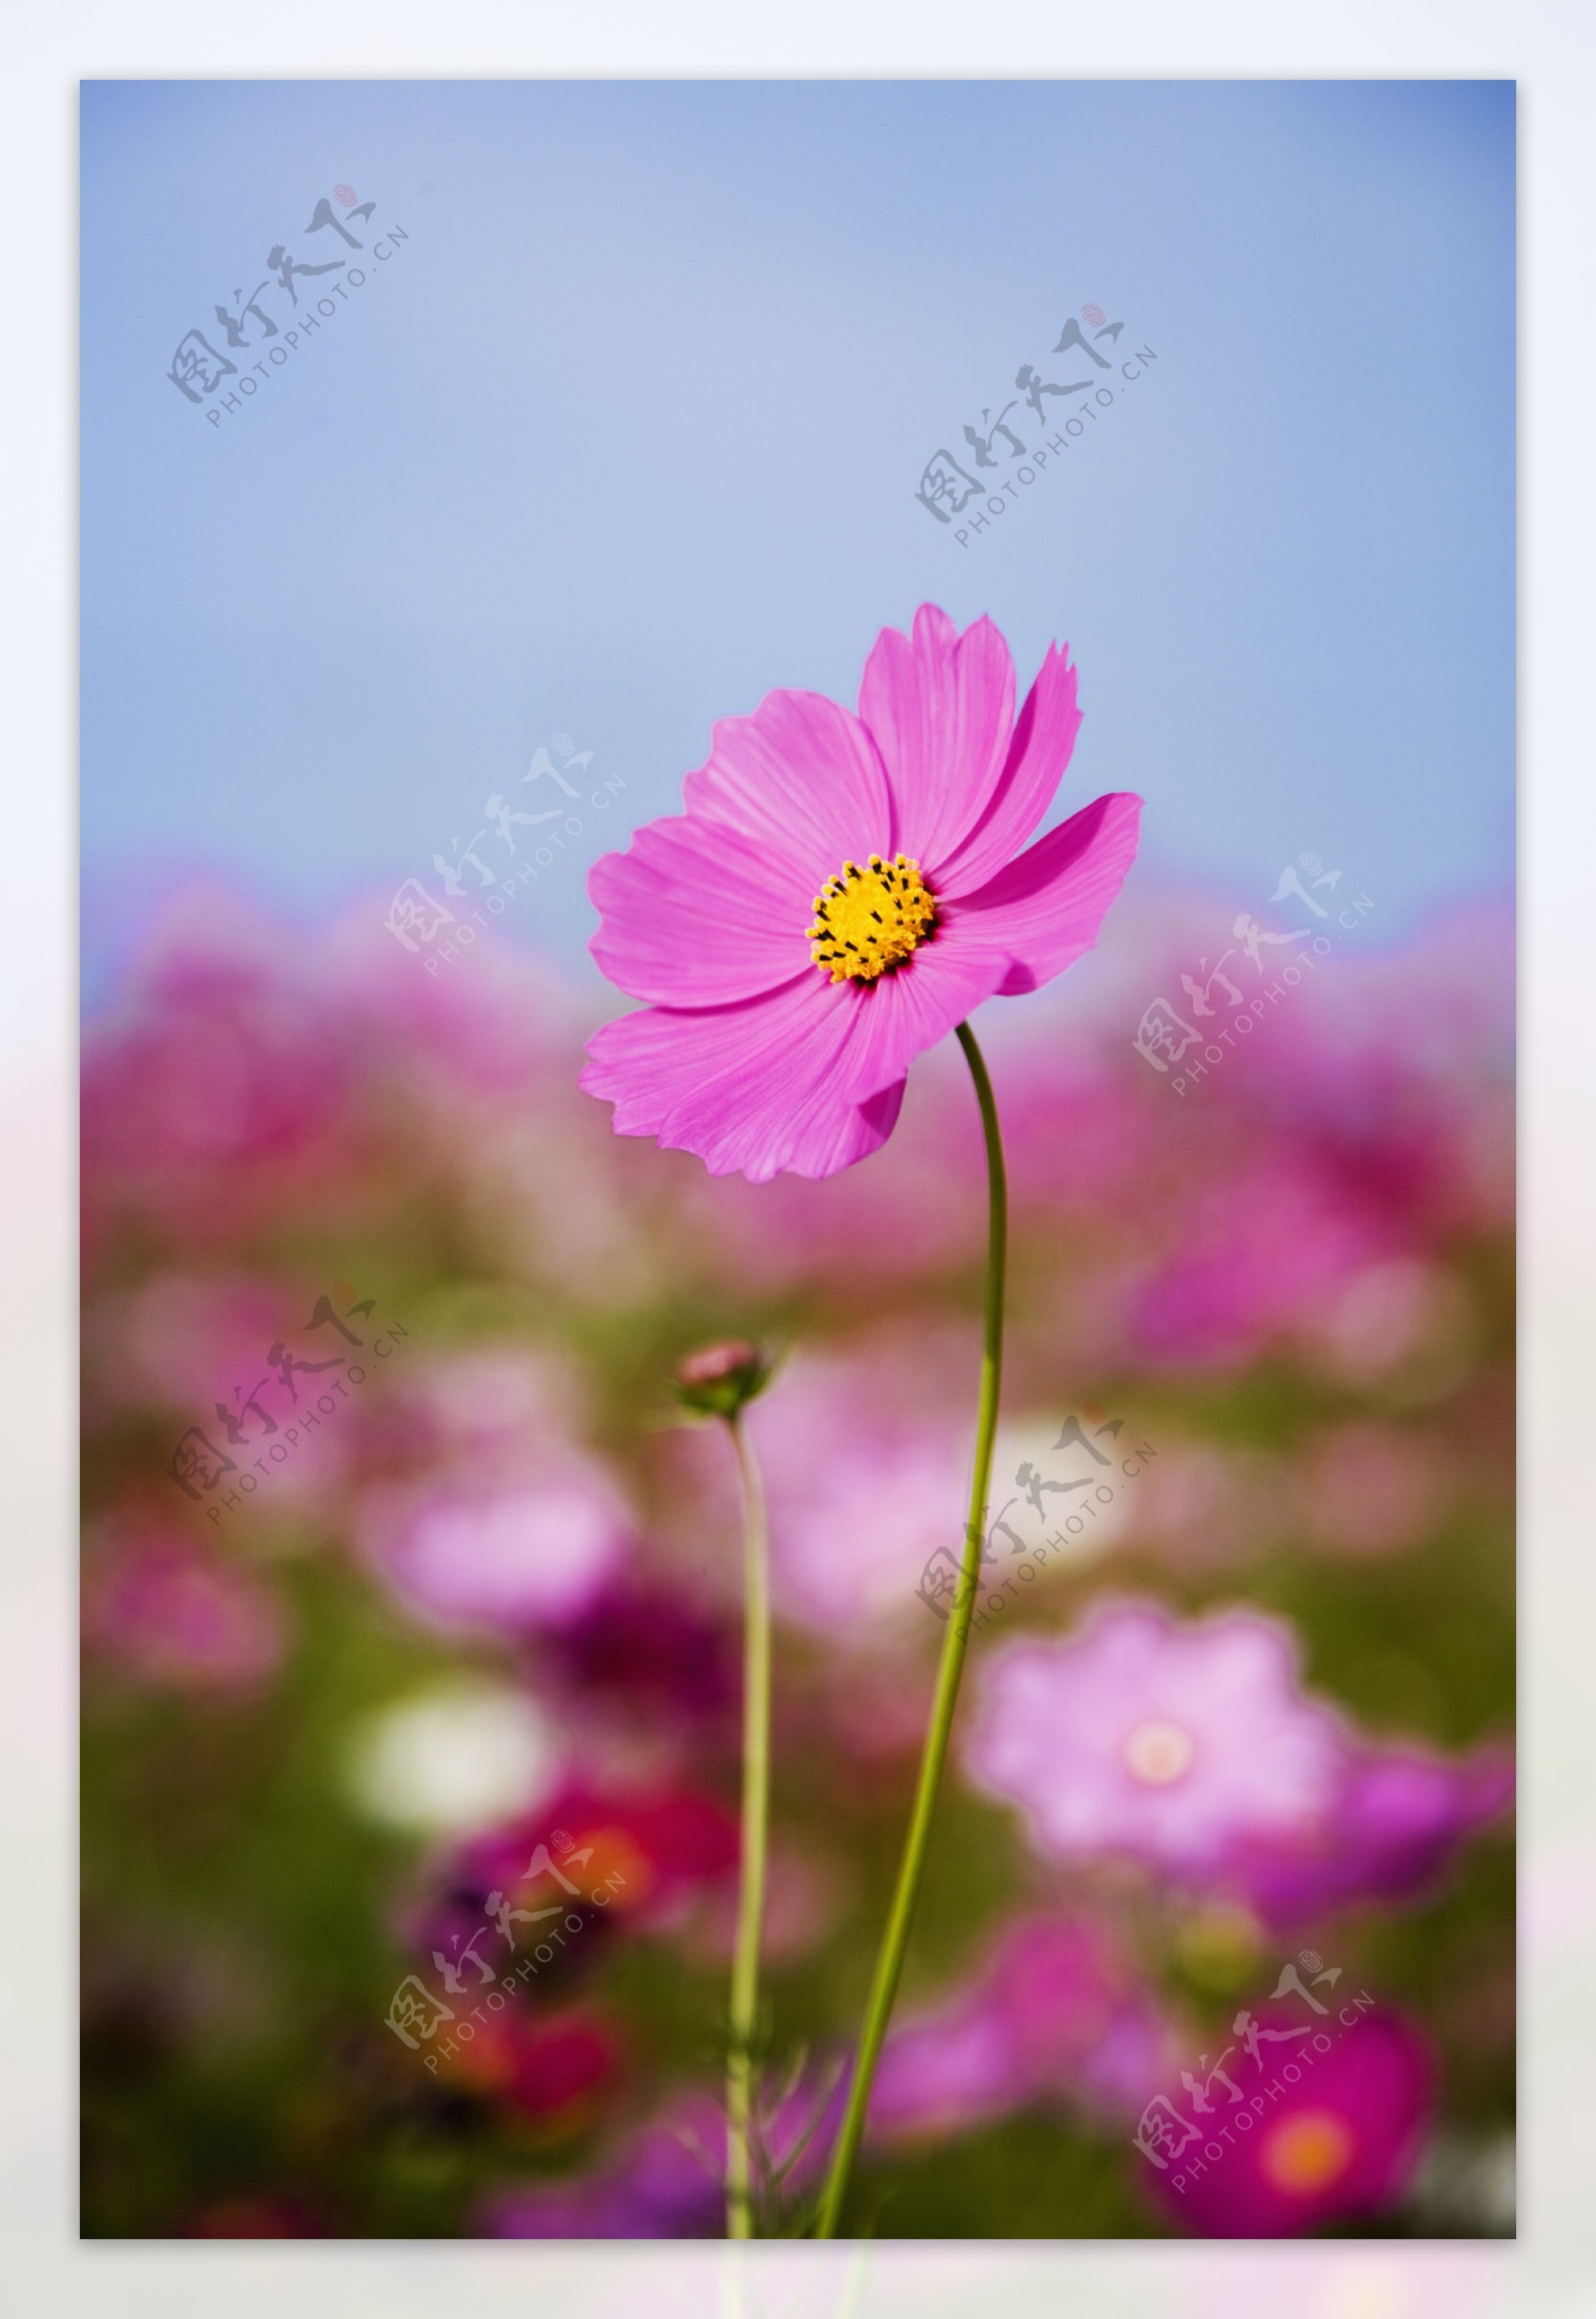 深粉色的雏菊花特写图片图片